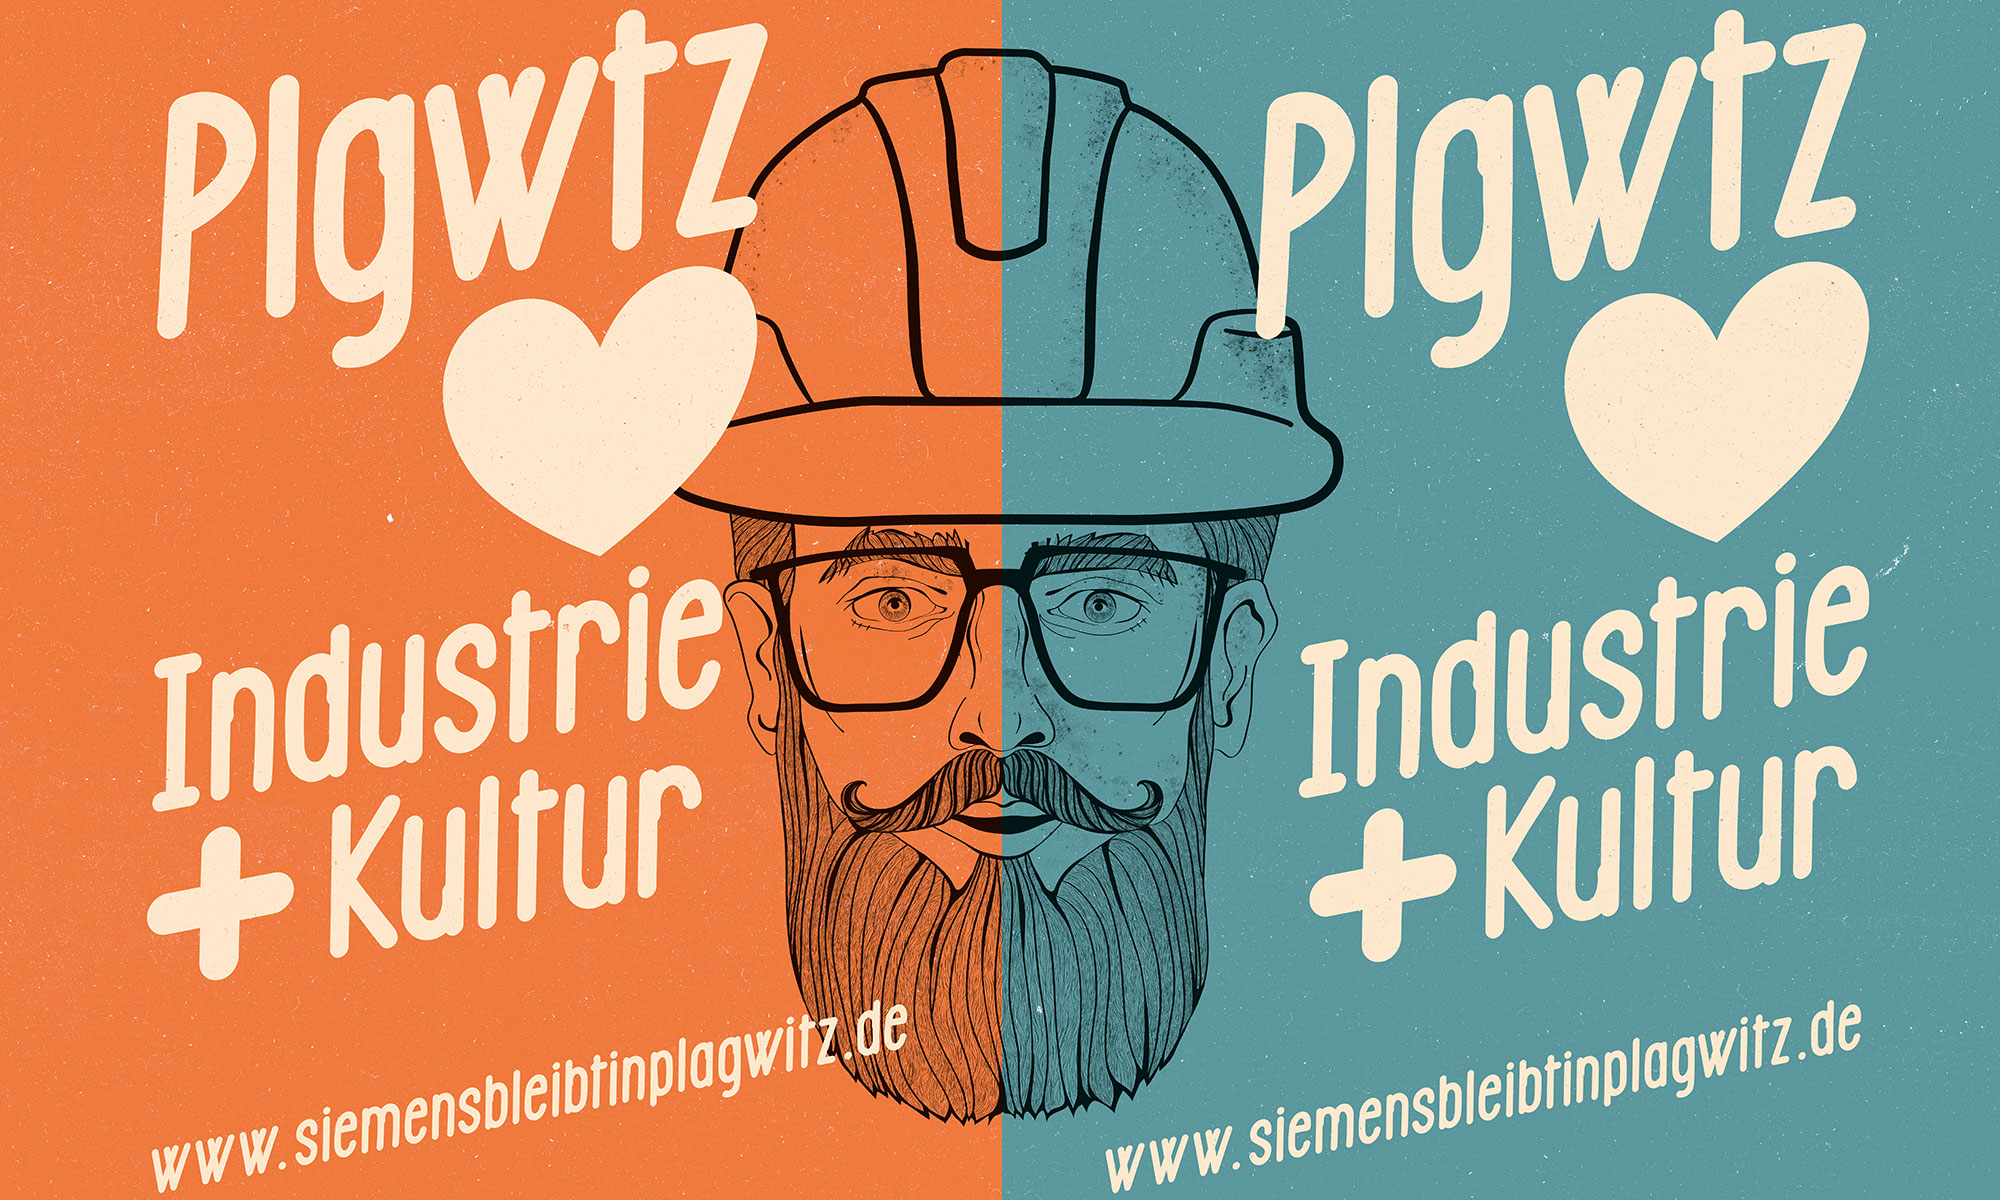 Siemens bleibt in Plagwitz!